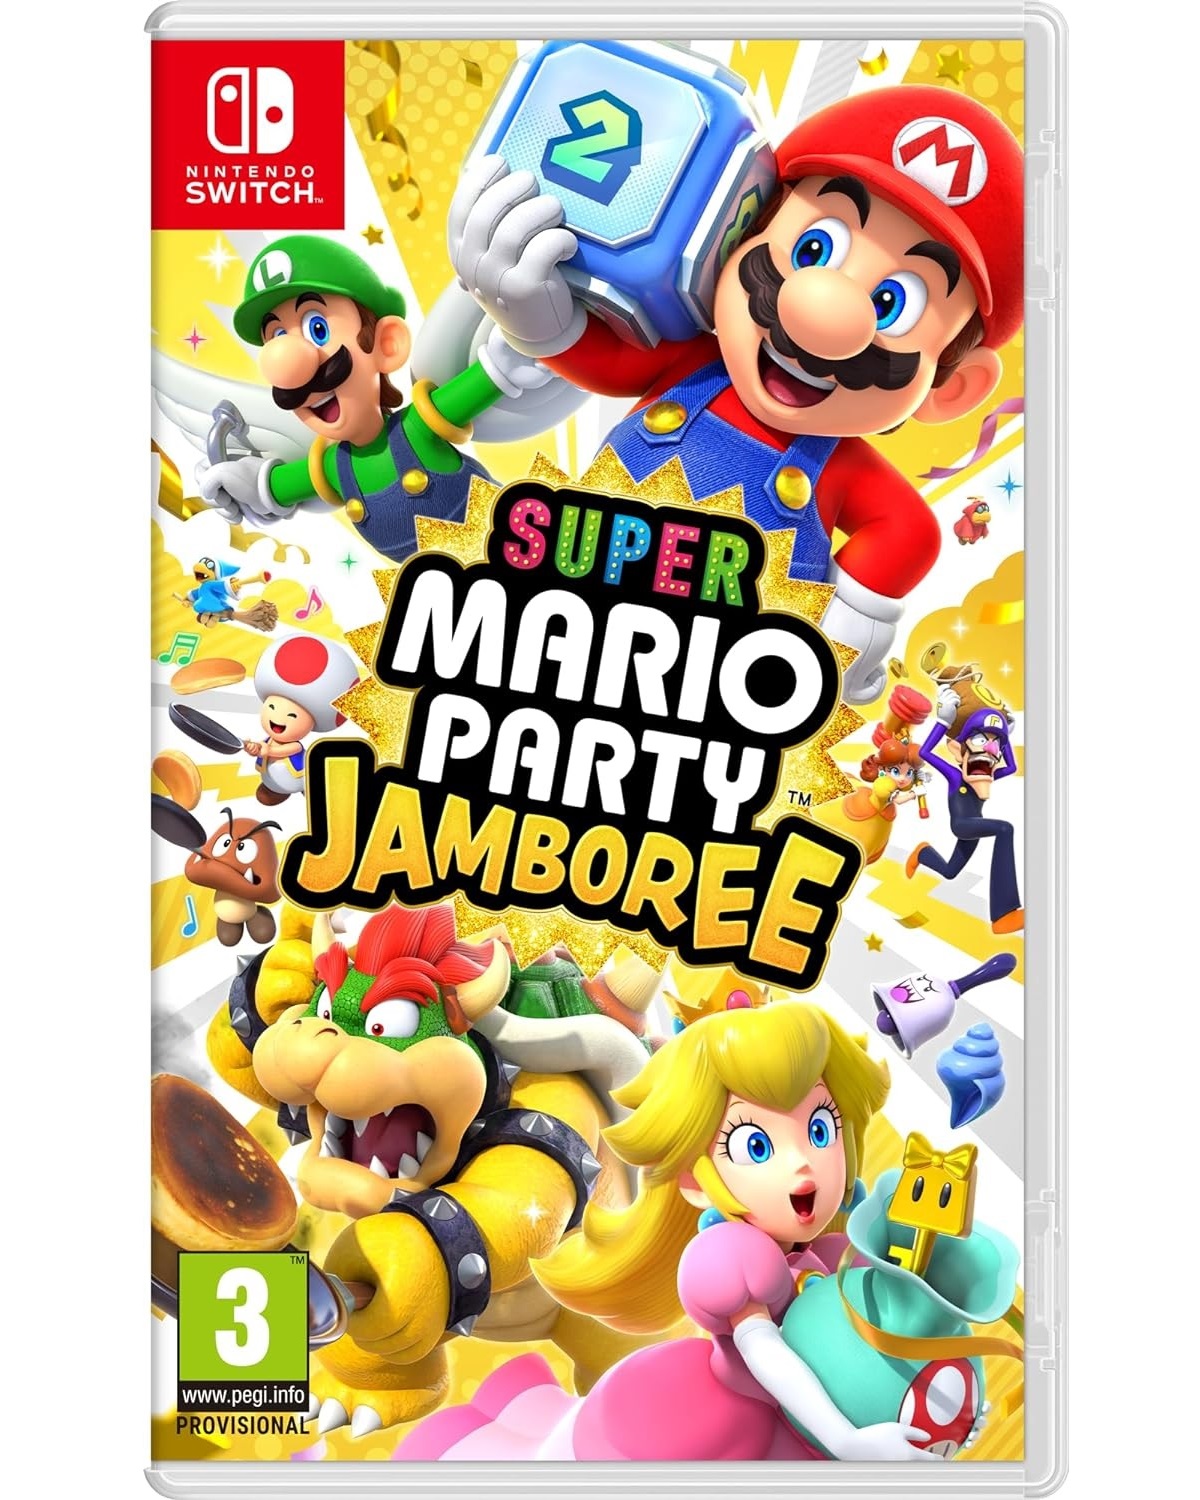 Super Mario Party Jamboree - Switch